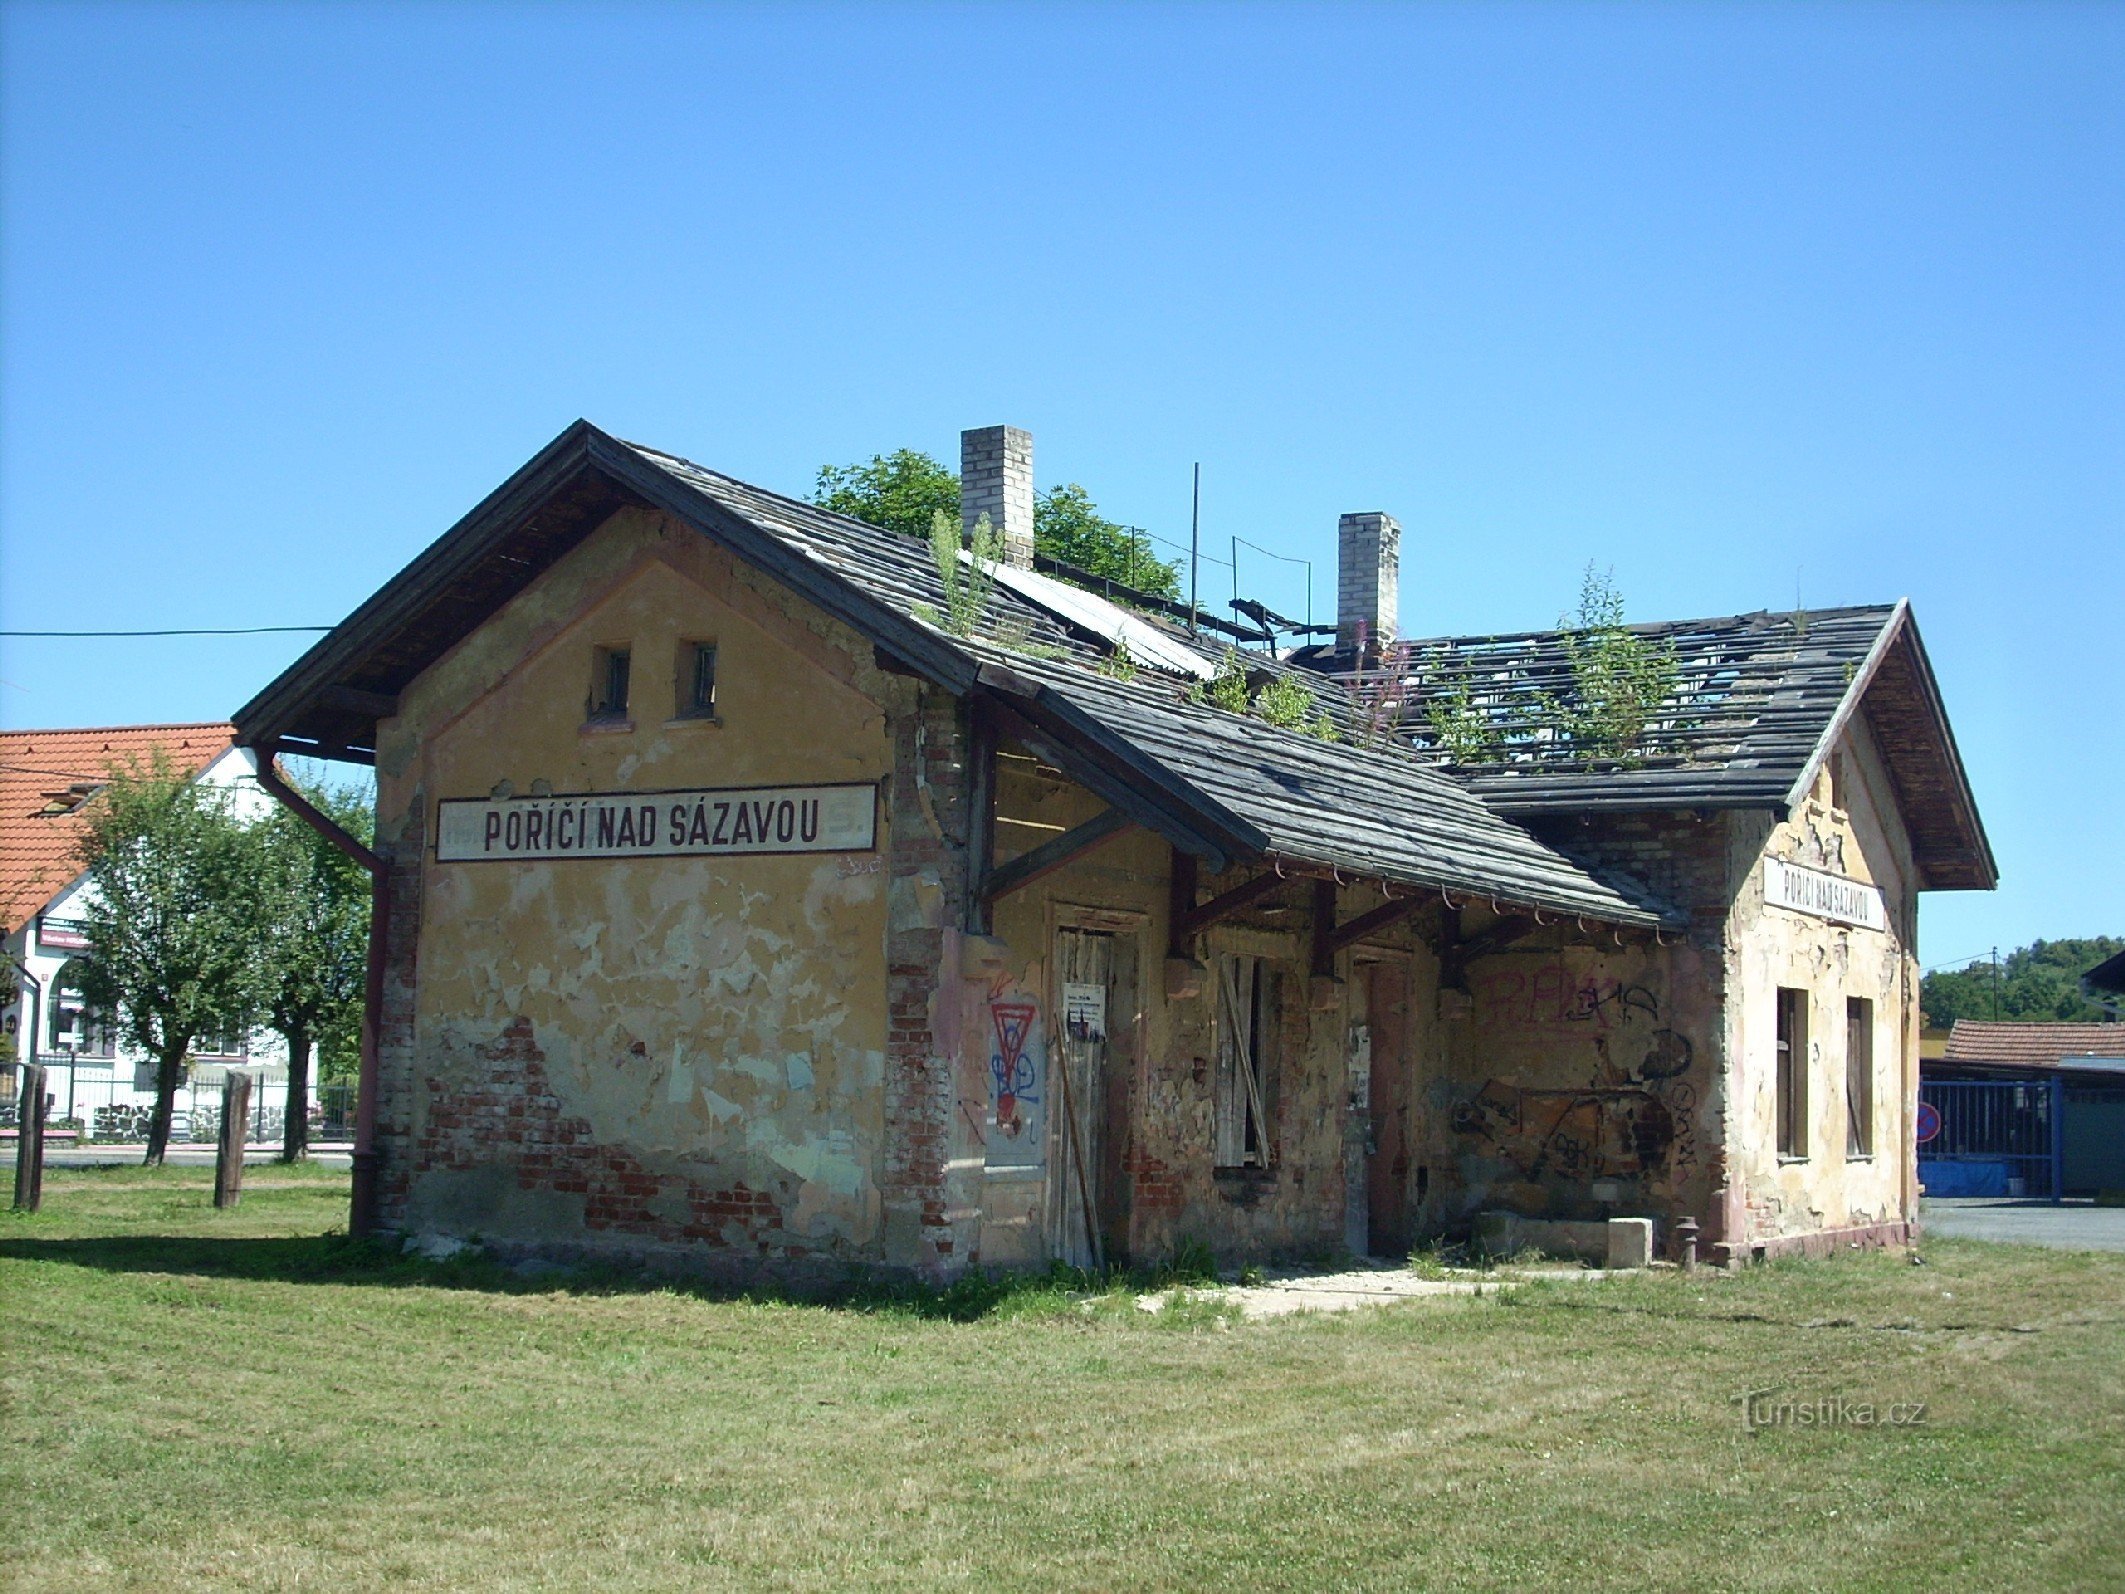 2. La stazione ferroviaria di Poříčí nad Sázavou - la foto mostra come la piccola stazione ferroviaria stia gradualmente scomparendo